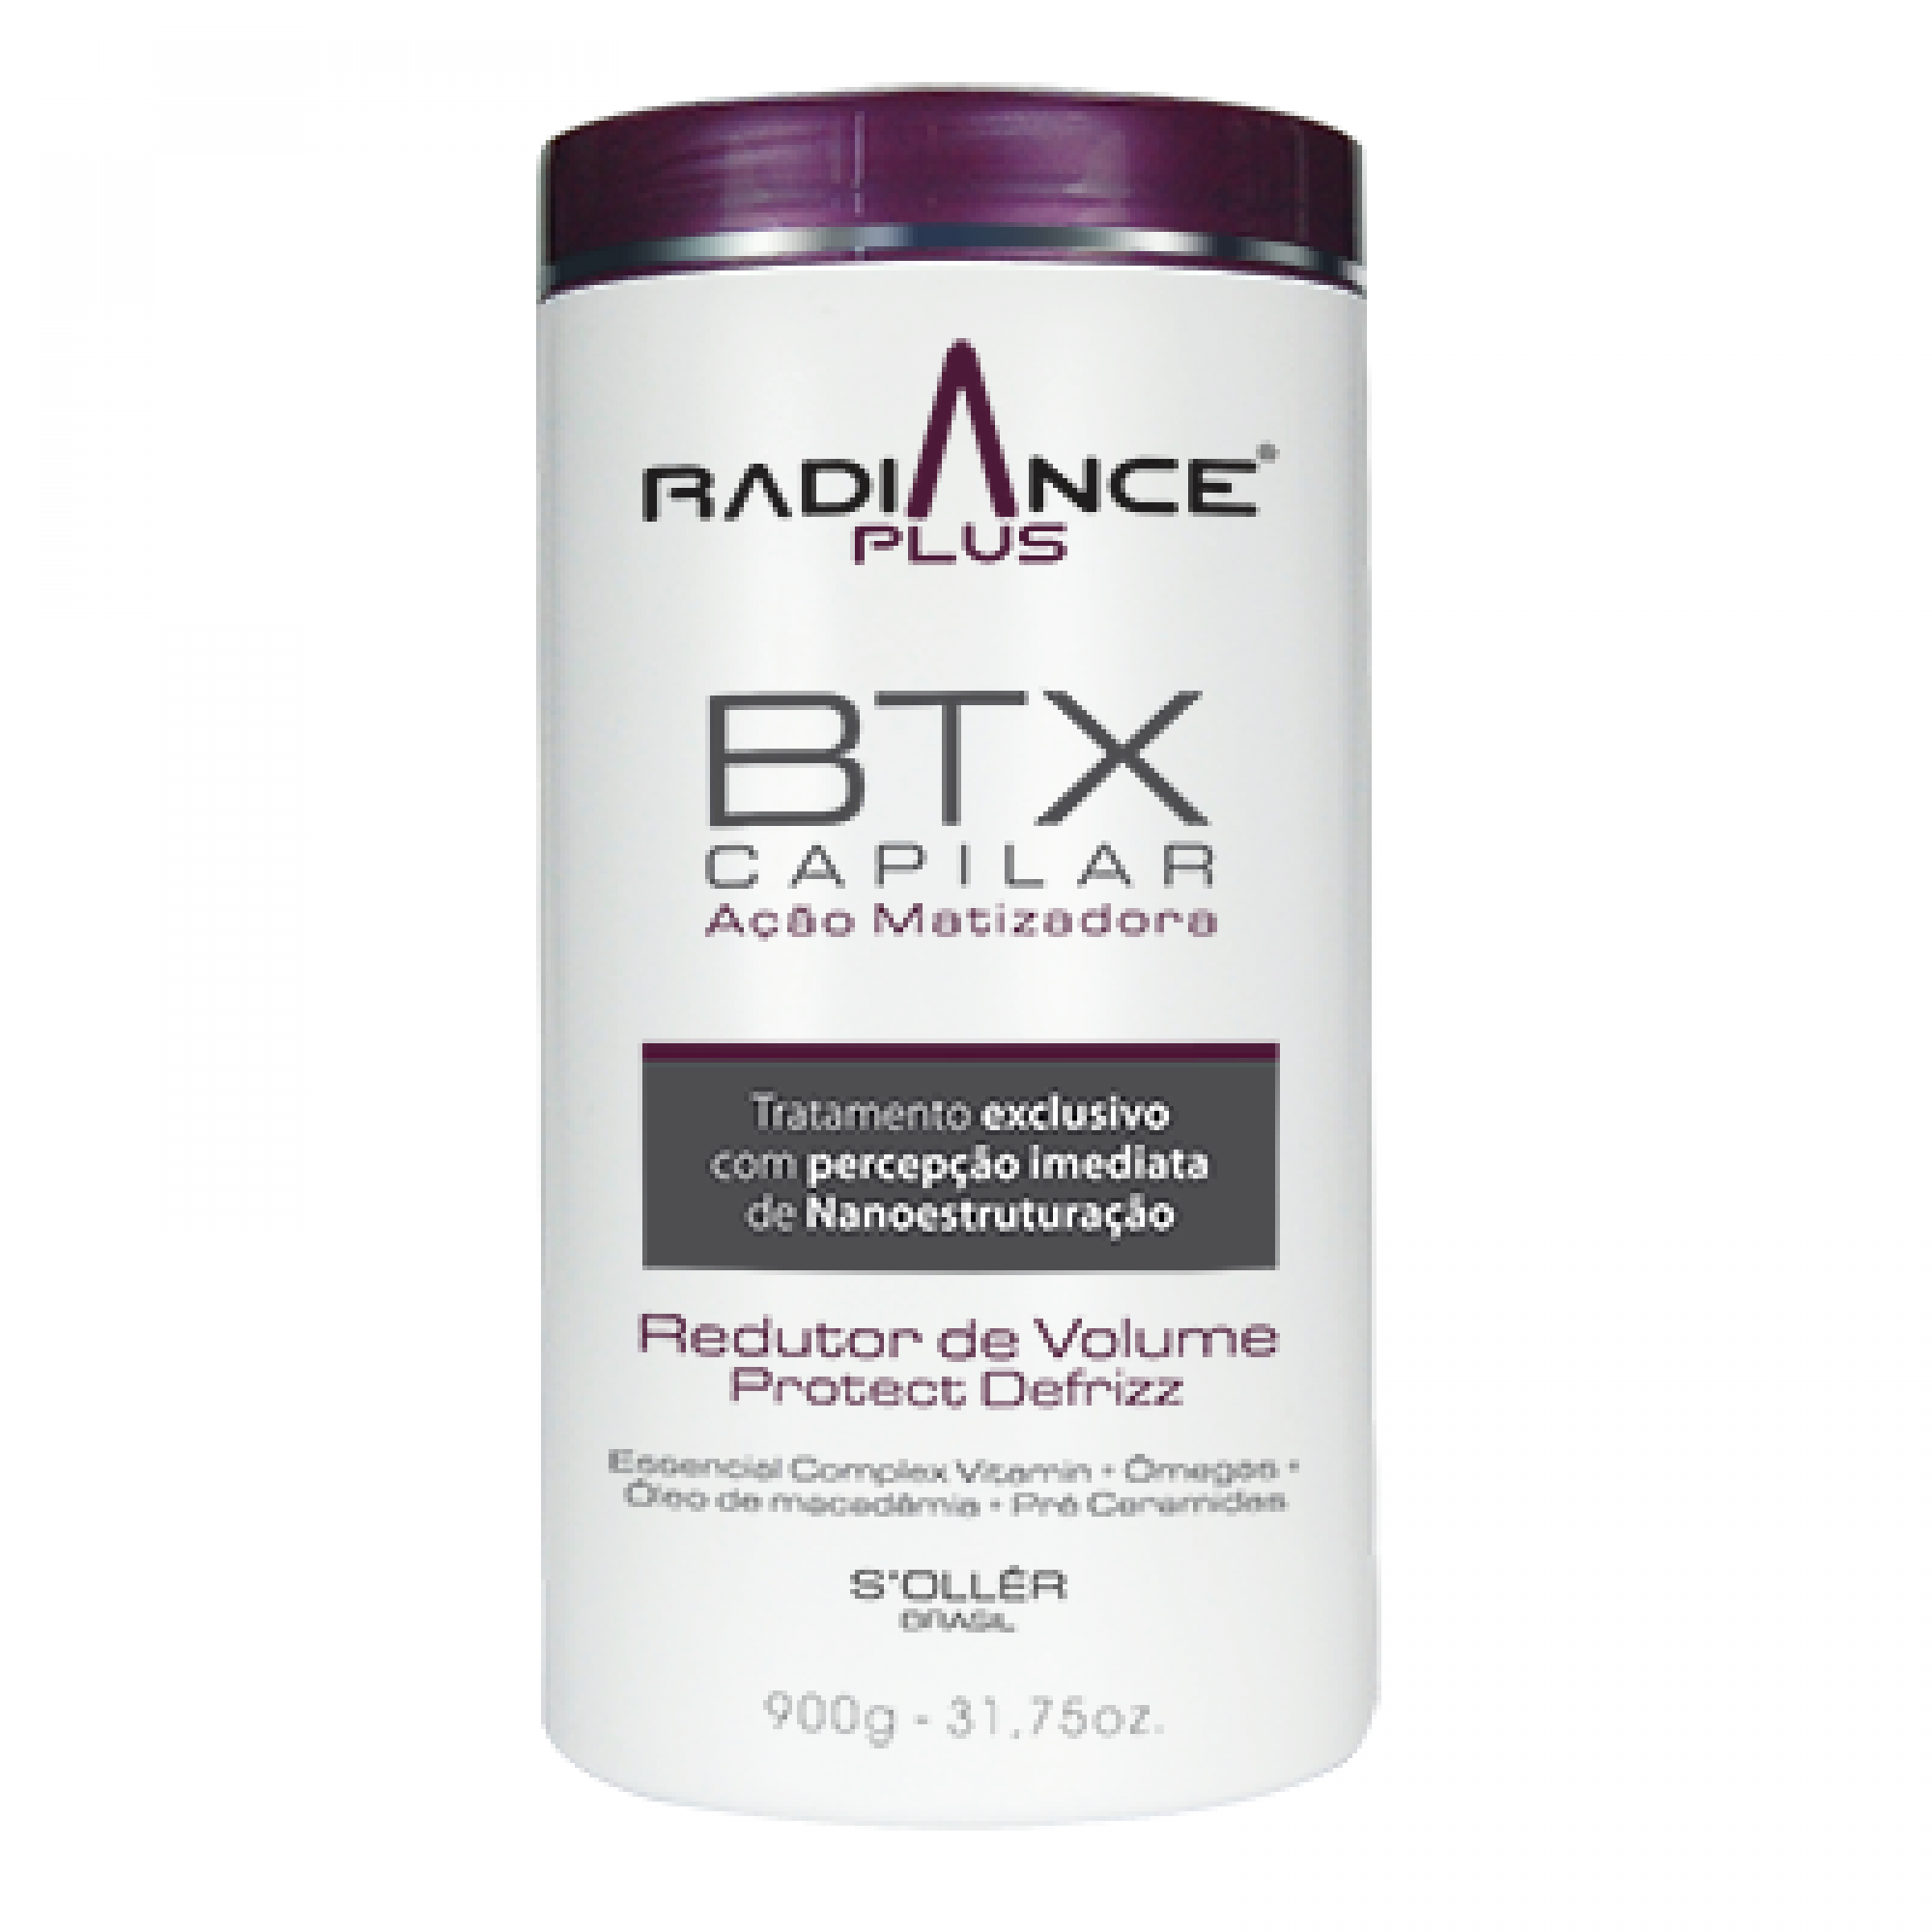 Produto BTX Capilar | Coleção Radiance Plus